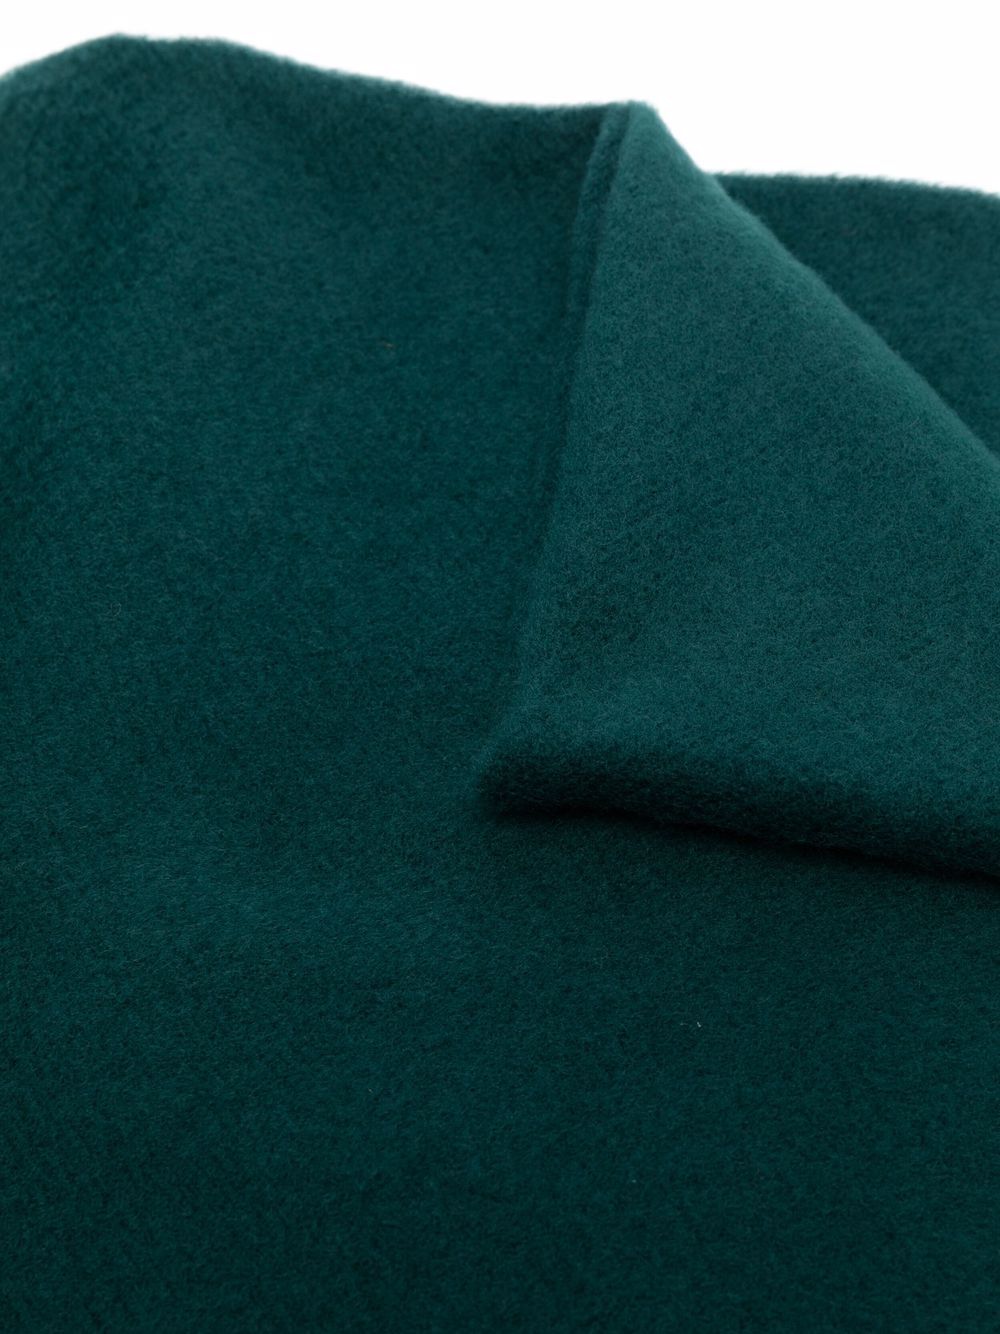 фото Acne studios шерстяной шарф тонкой вязки